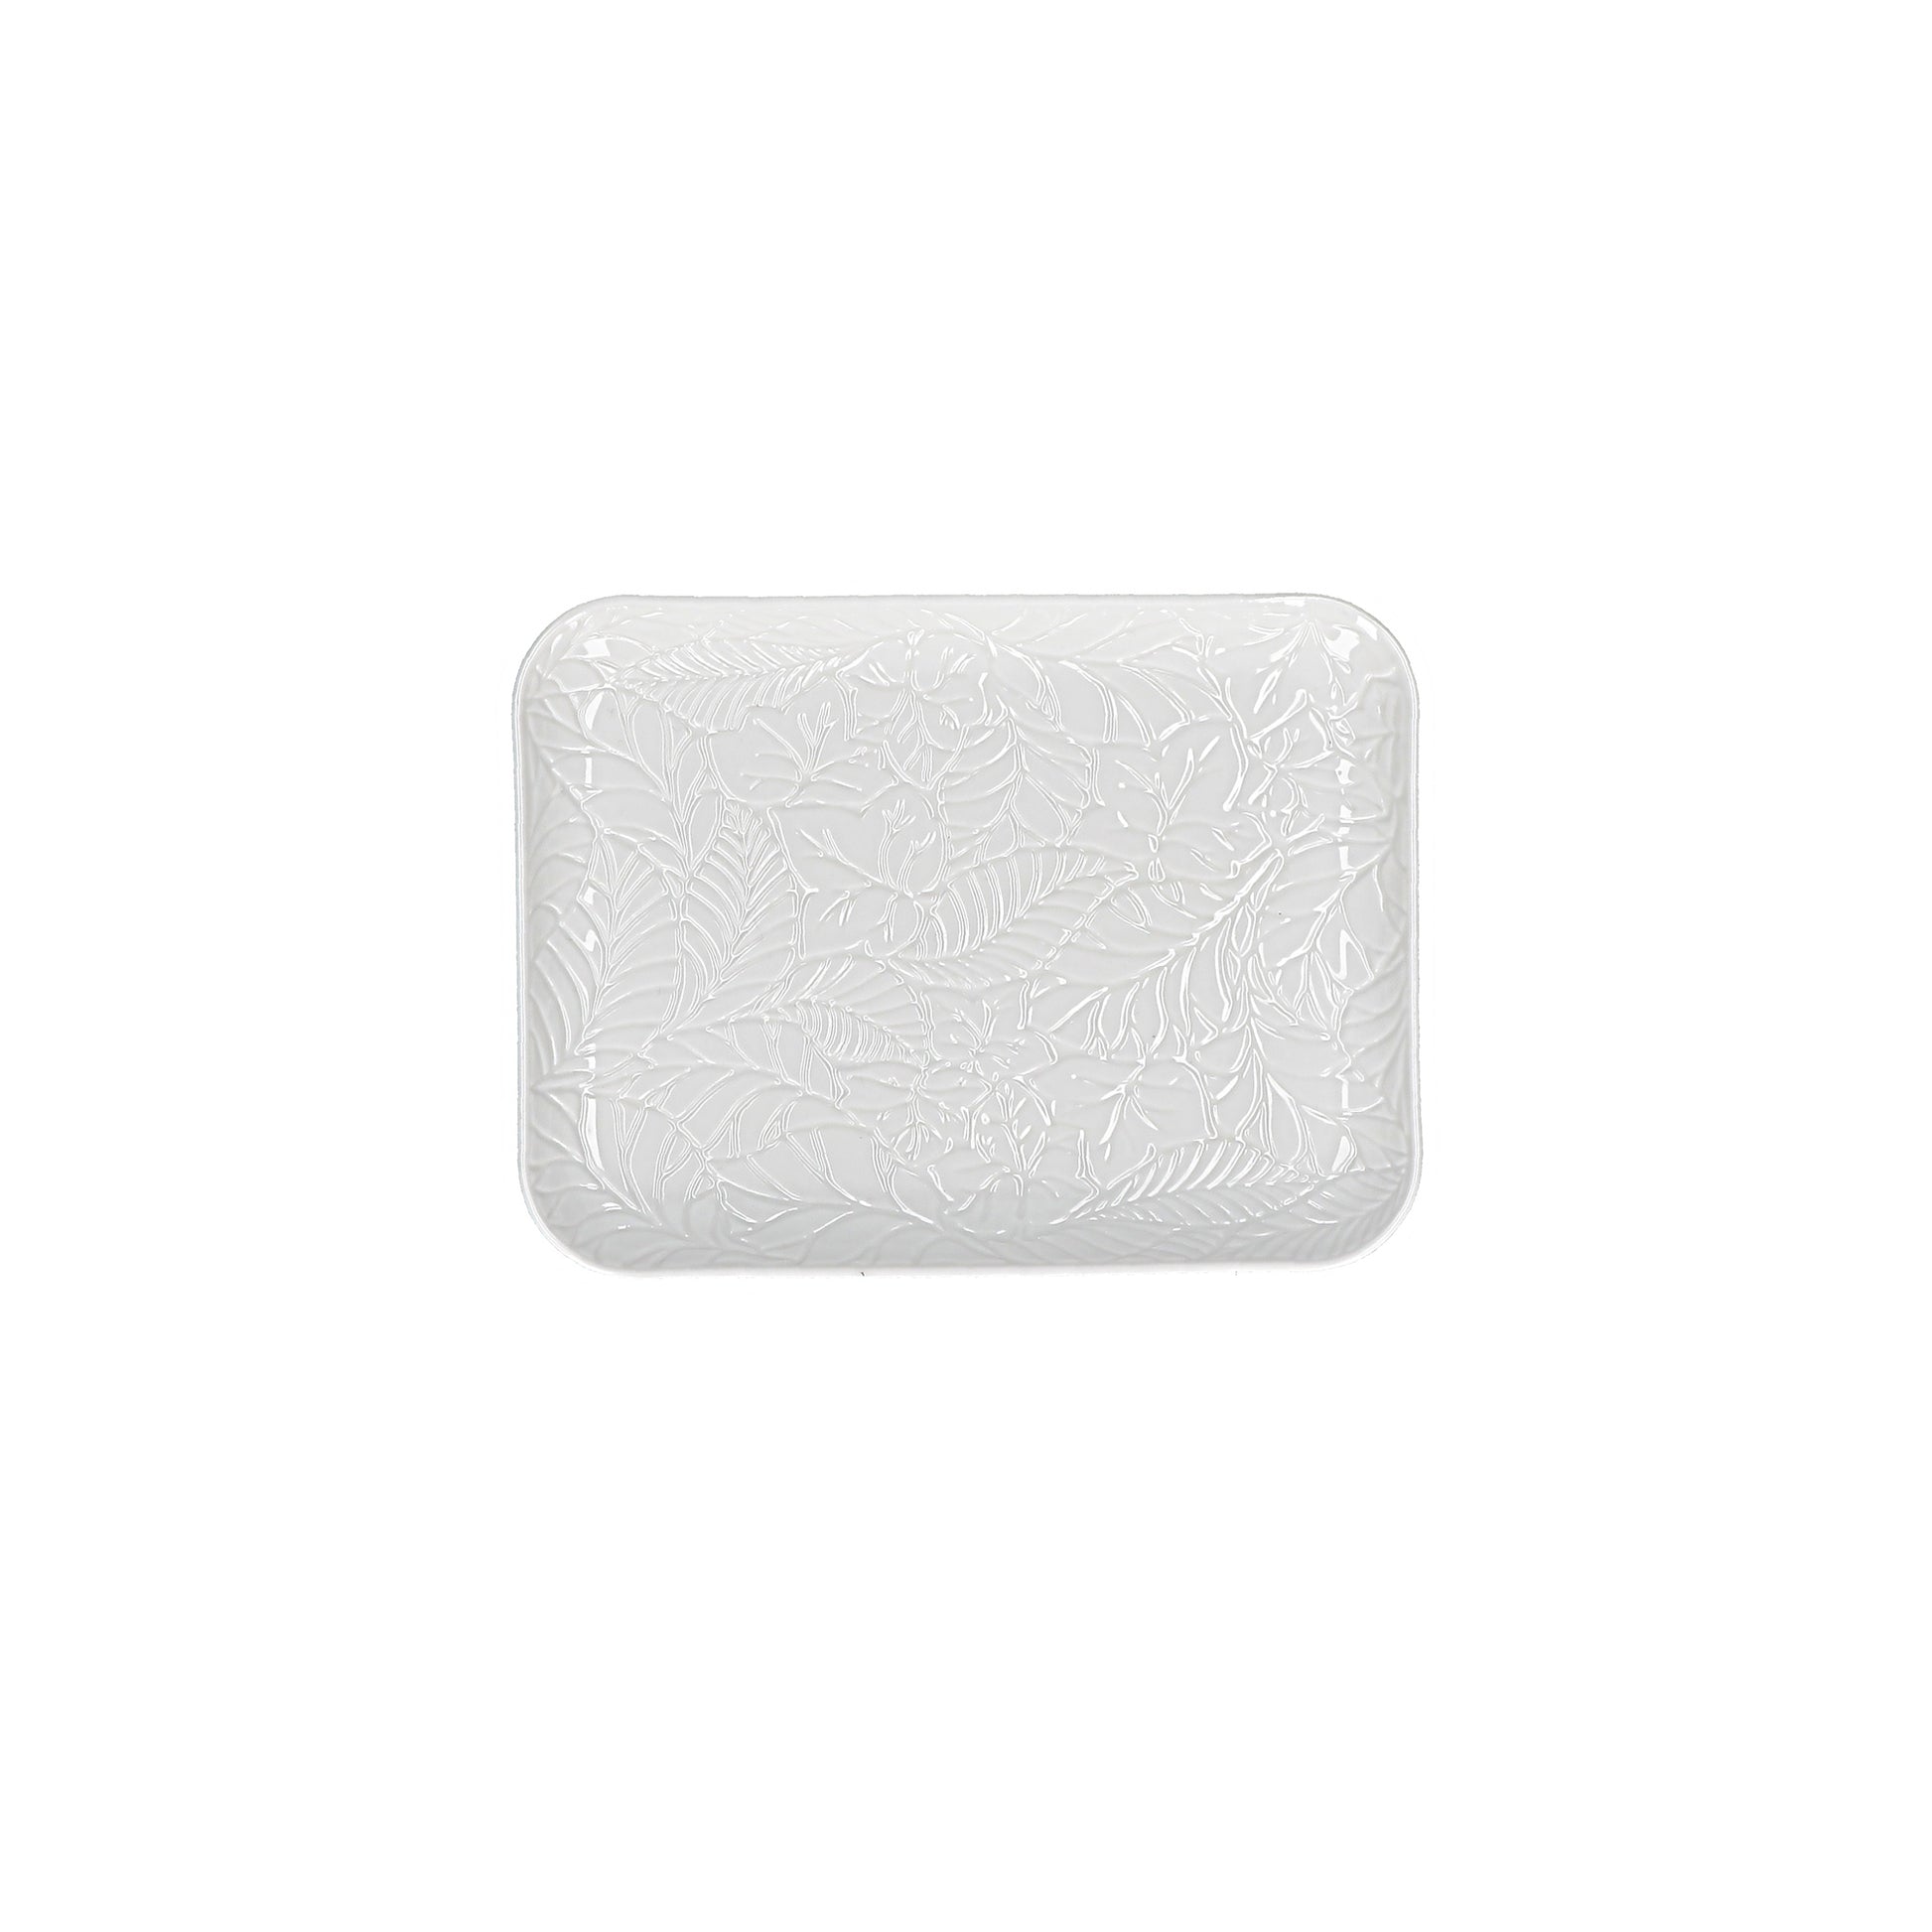 Vassoio in porcellana bianca lavorata. Dimensioni: cm 15 x 20 x h 2. Utilizzabile in forno a microonde Lavabile in lavastoviglie. In negozio e online su tuttochic.it